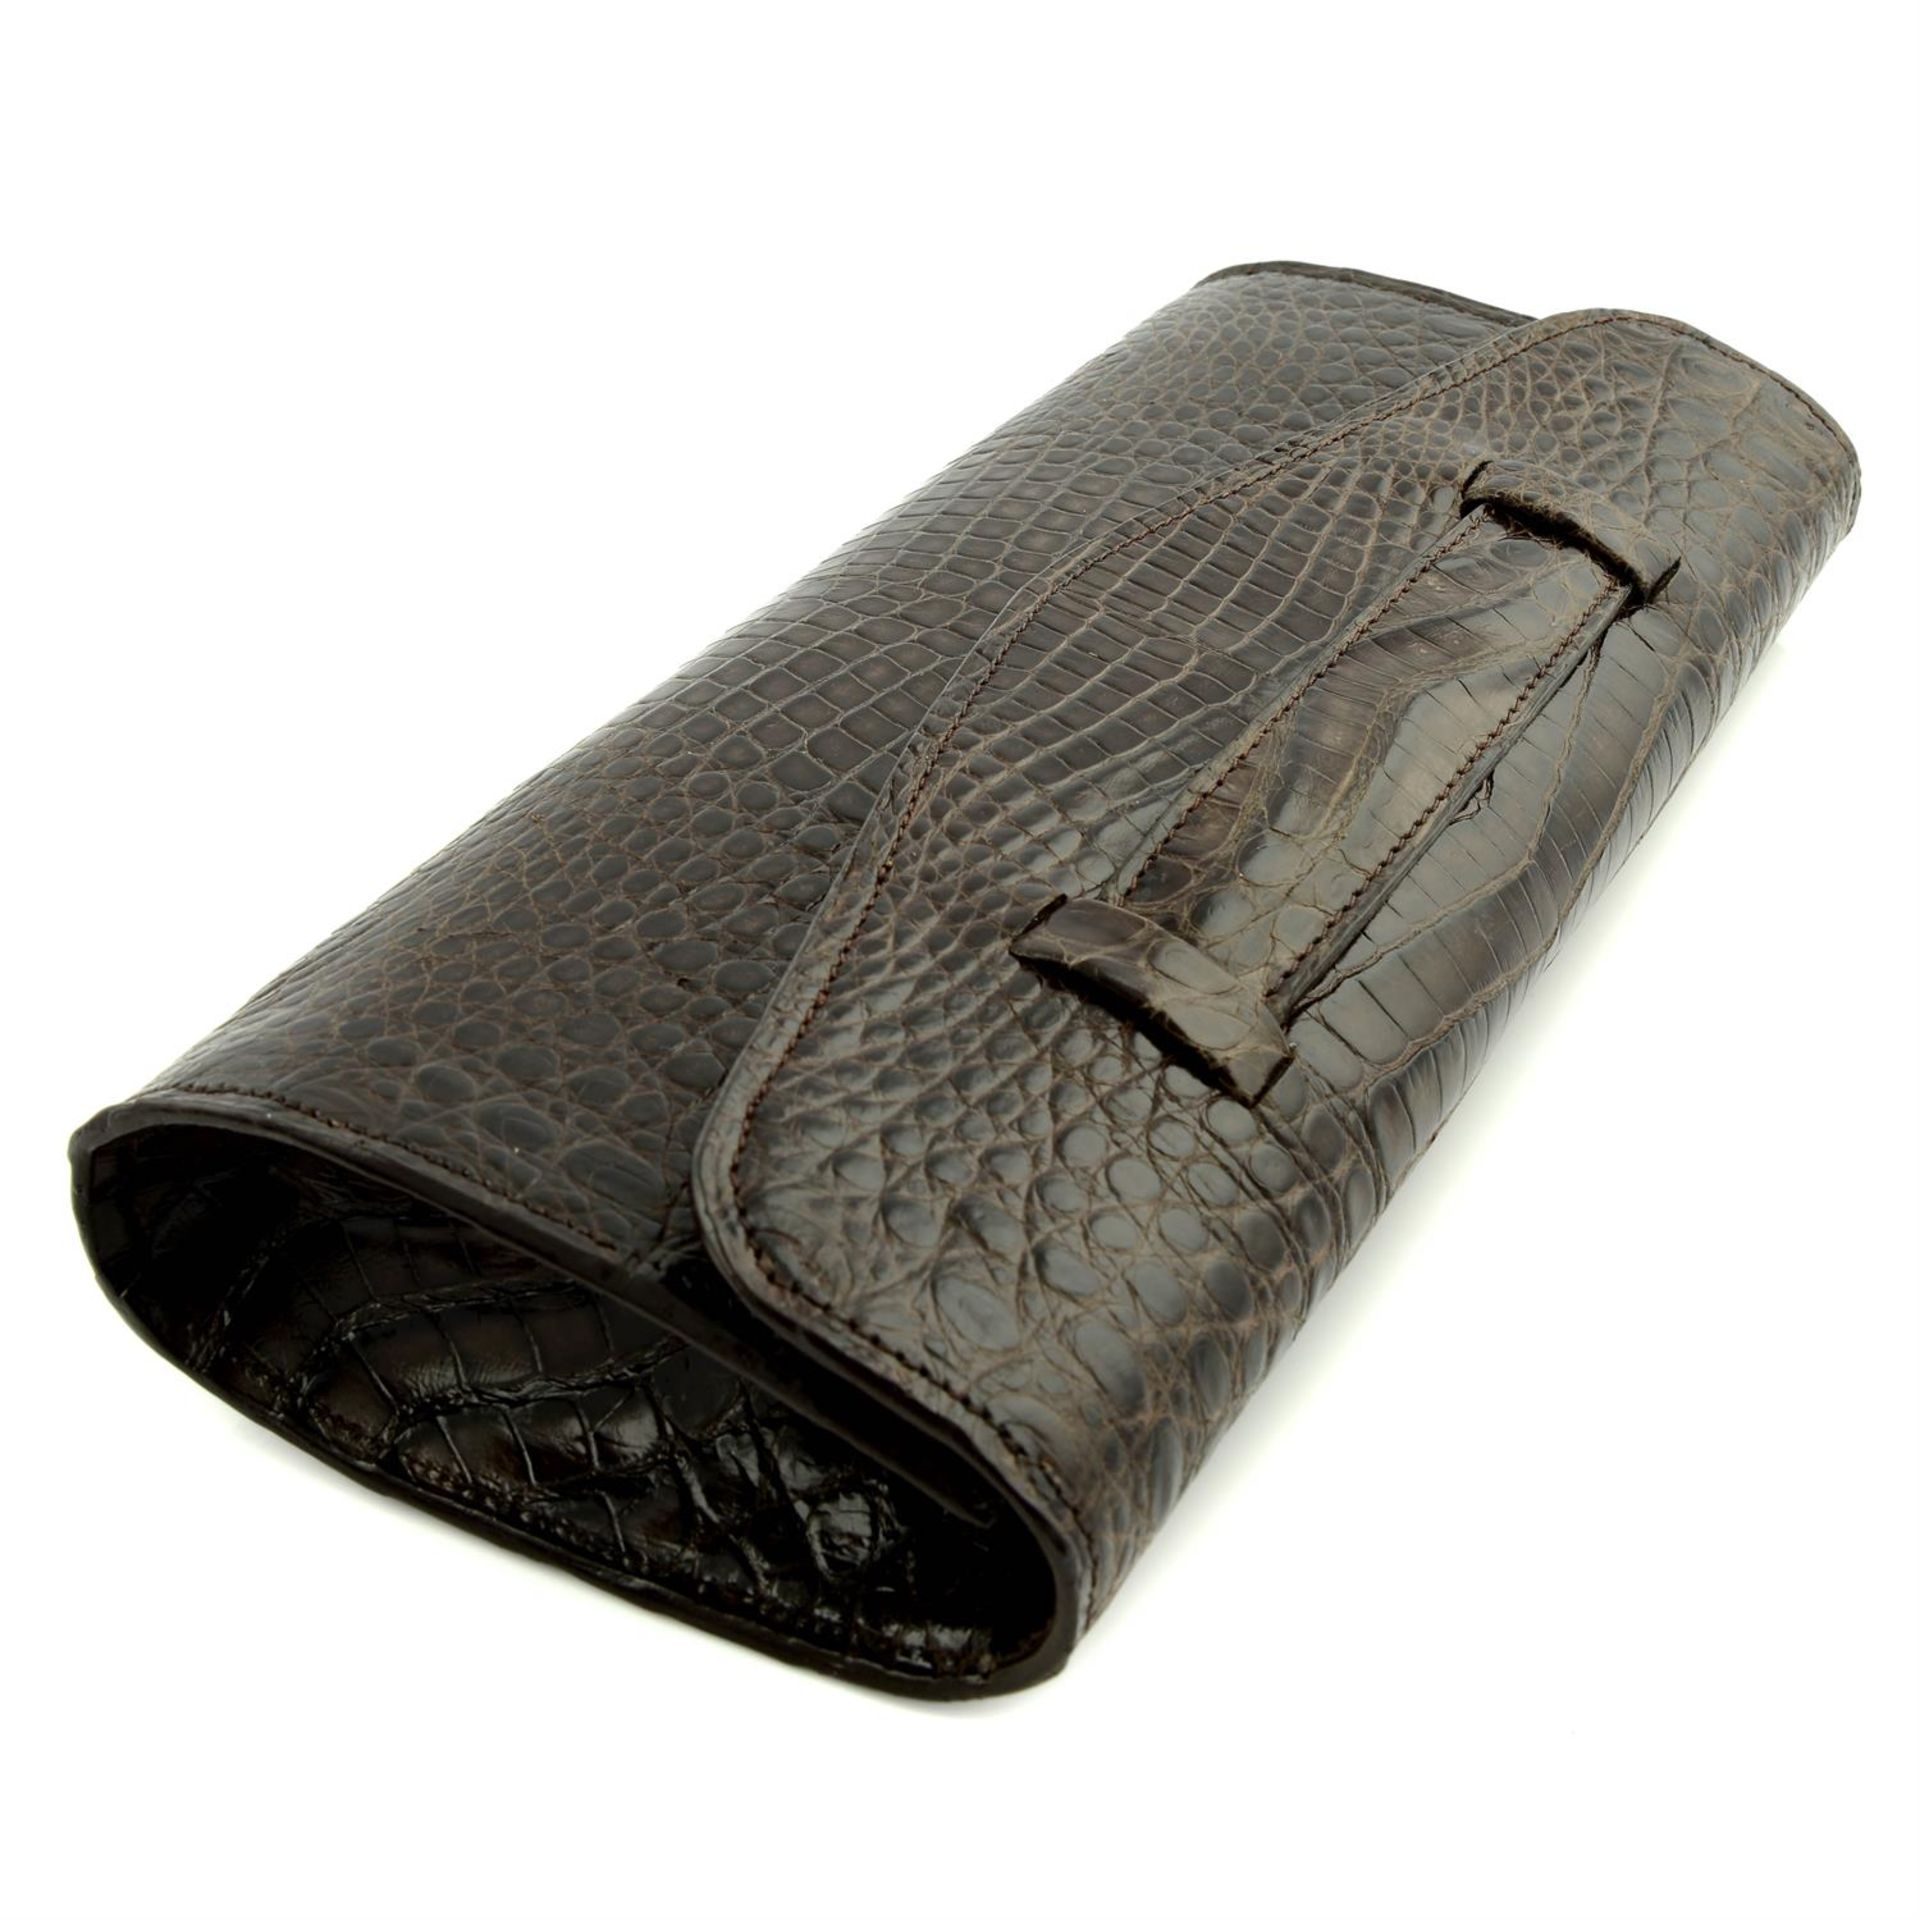 Alligator brown clutch bag - Image 3 of 3